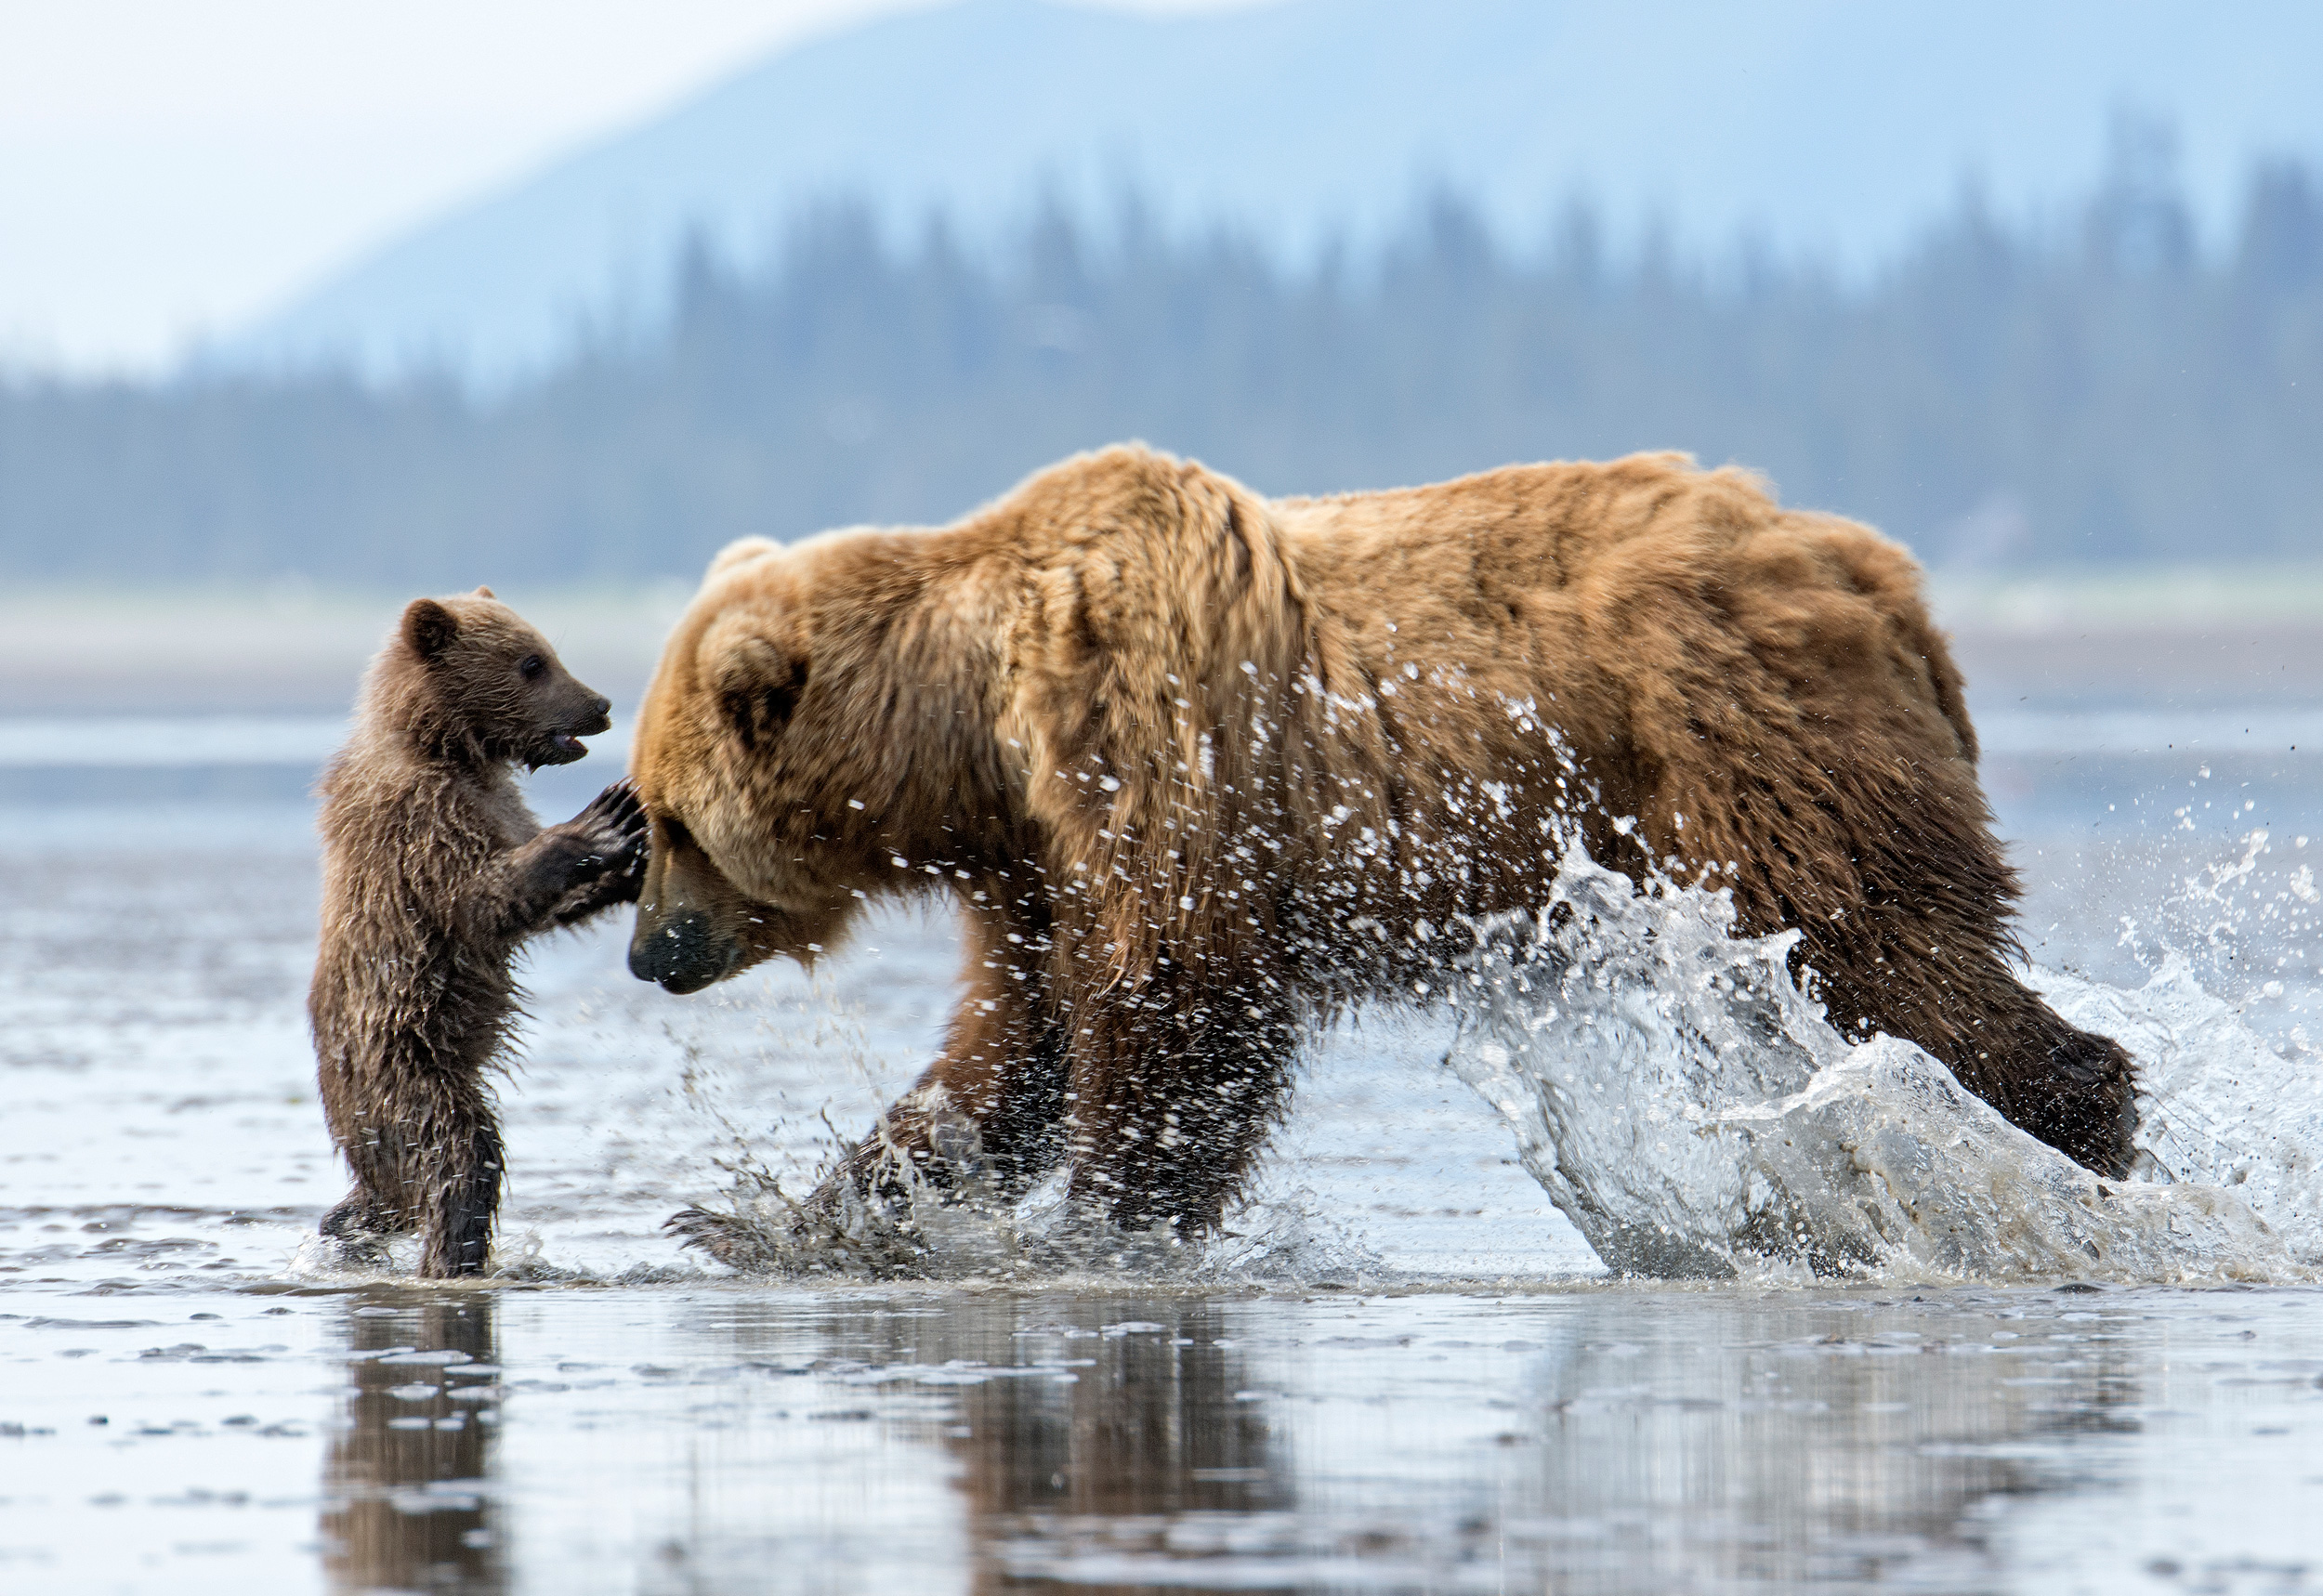 Alaska’s Wildlife in the Crosshairs | Defenders of Wildlife